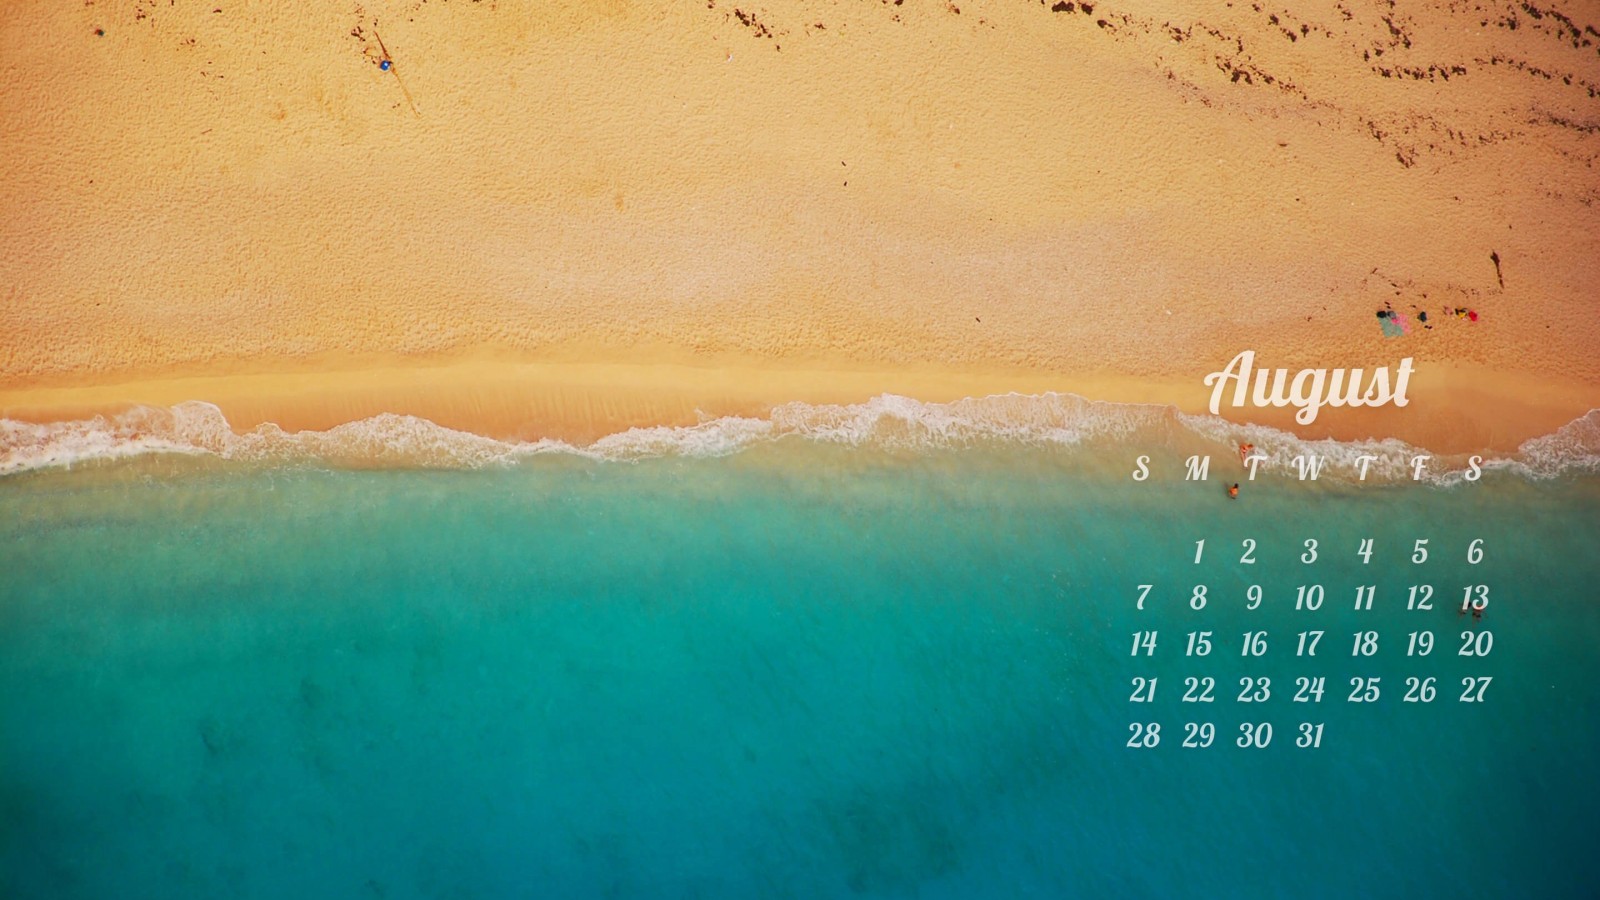 August 2016 Calendar Wallpaper for Desktop 1600x900